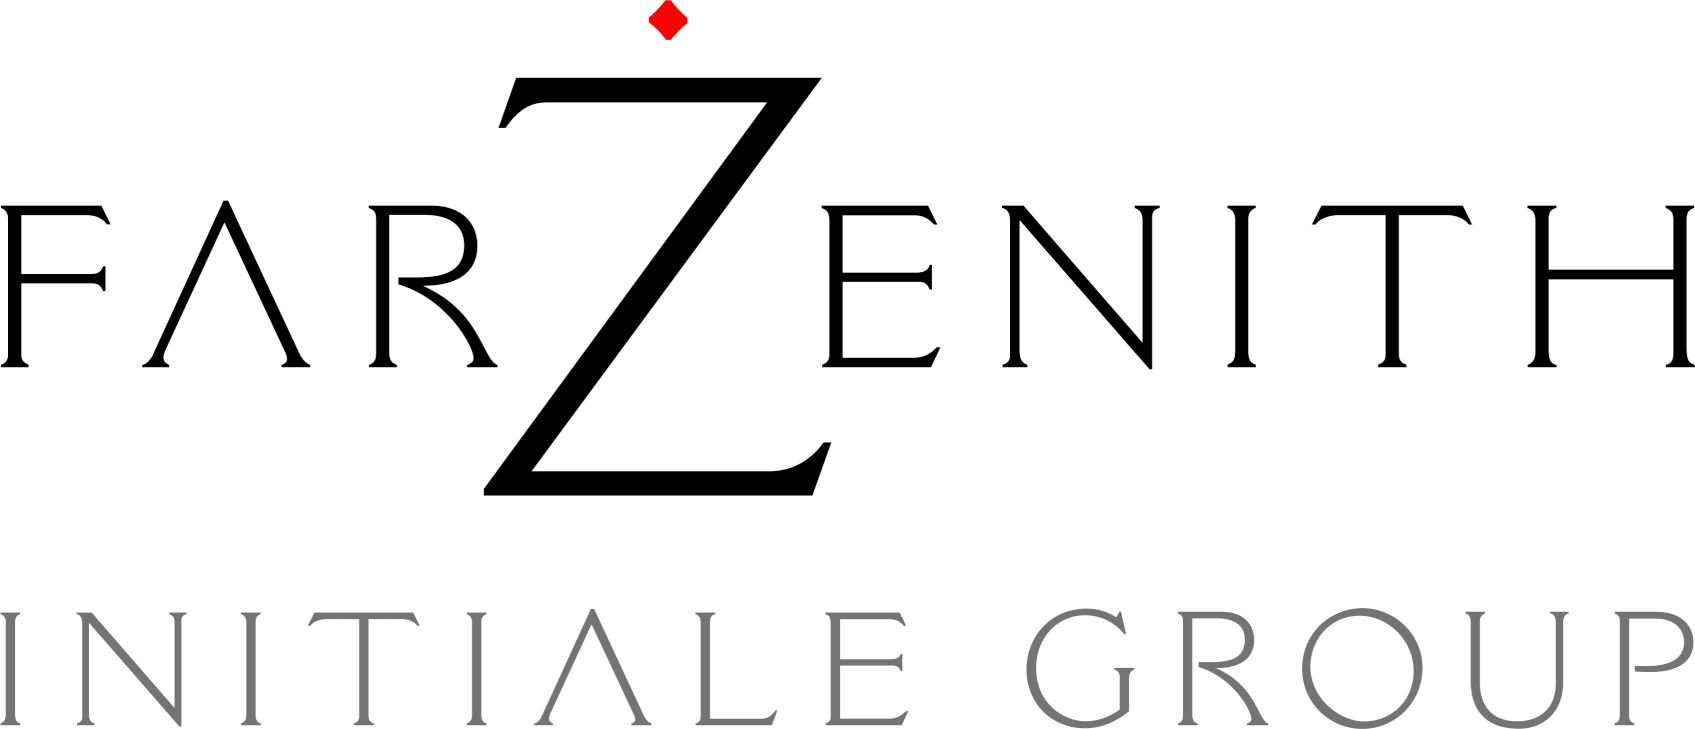 farZenith // Initiale Group - logo